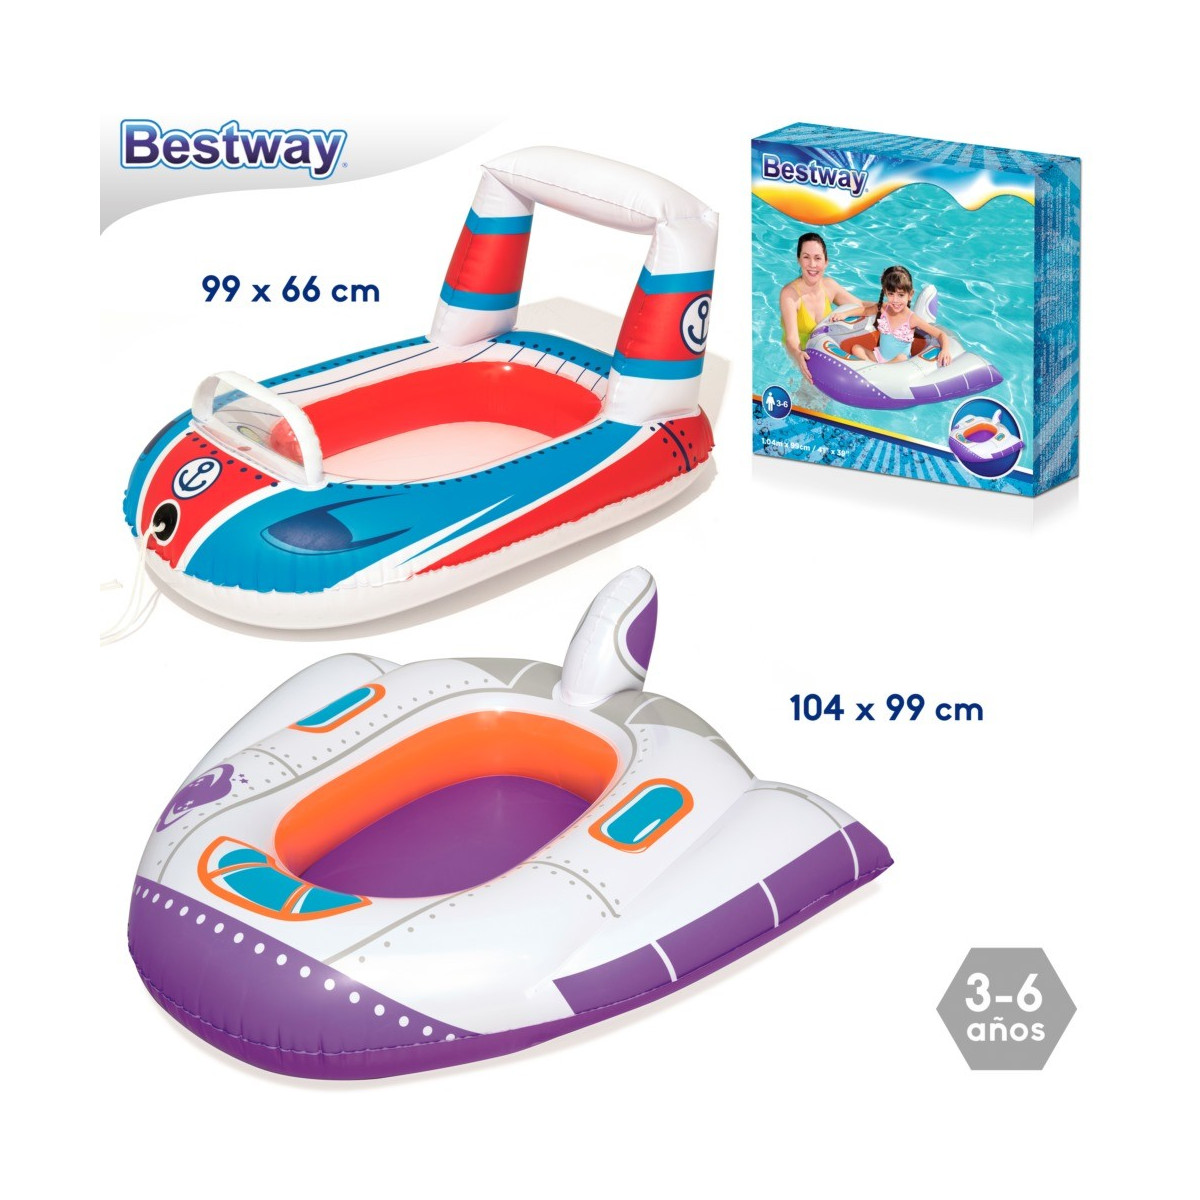 Veicoli barca per bambini 2 m gonfiabile 104 x 99 cm